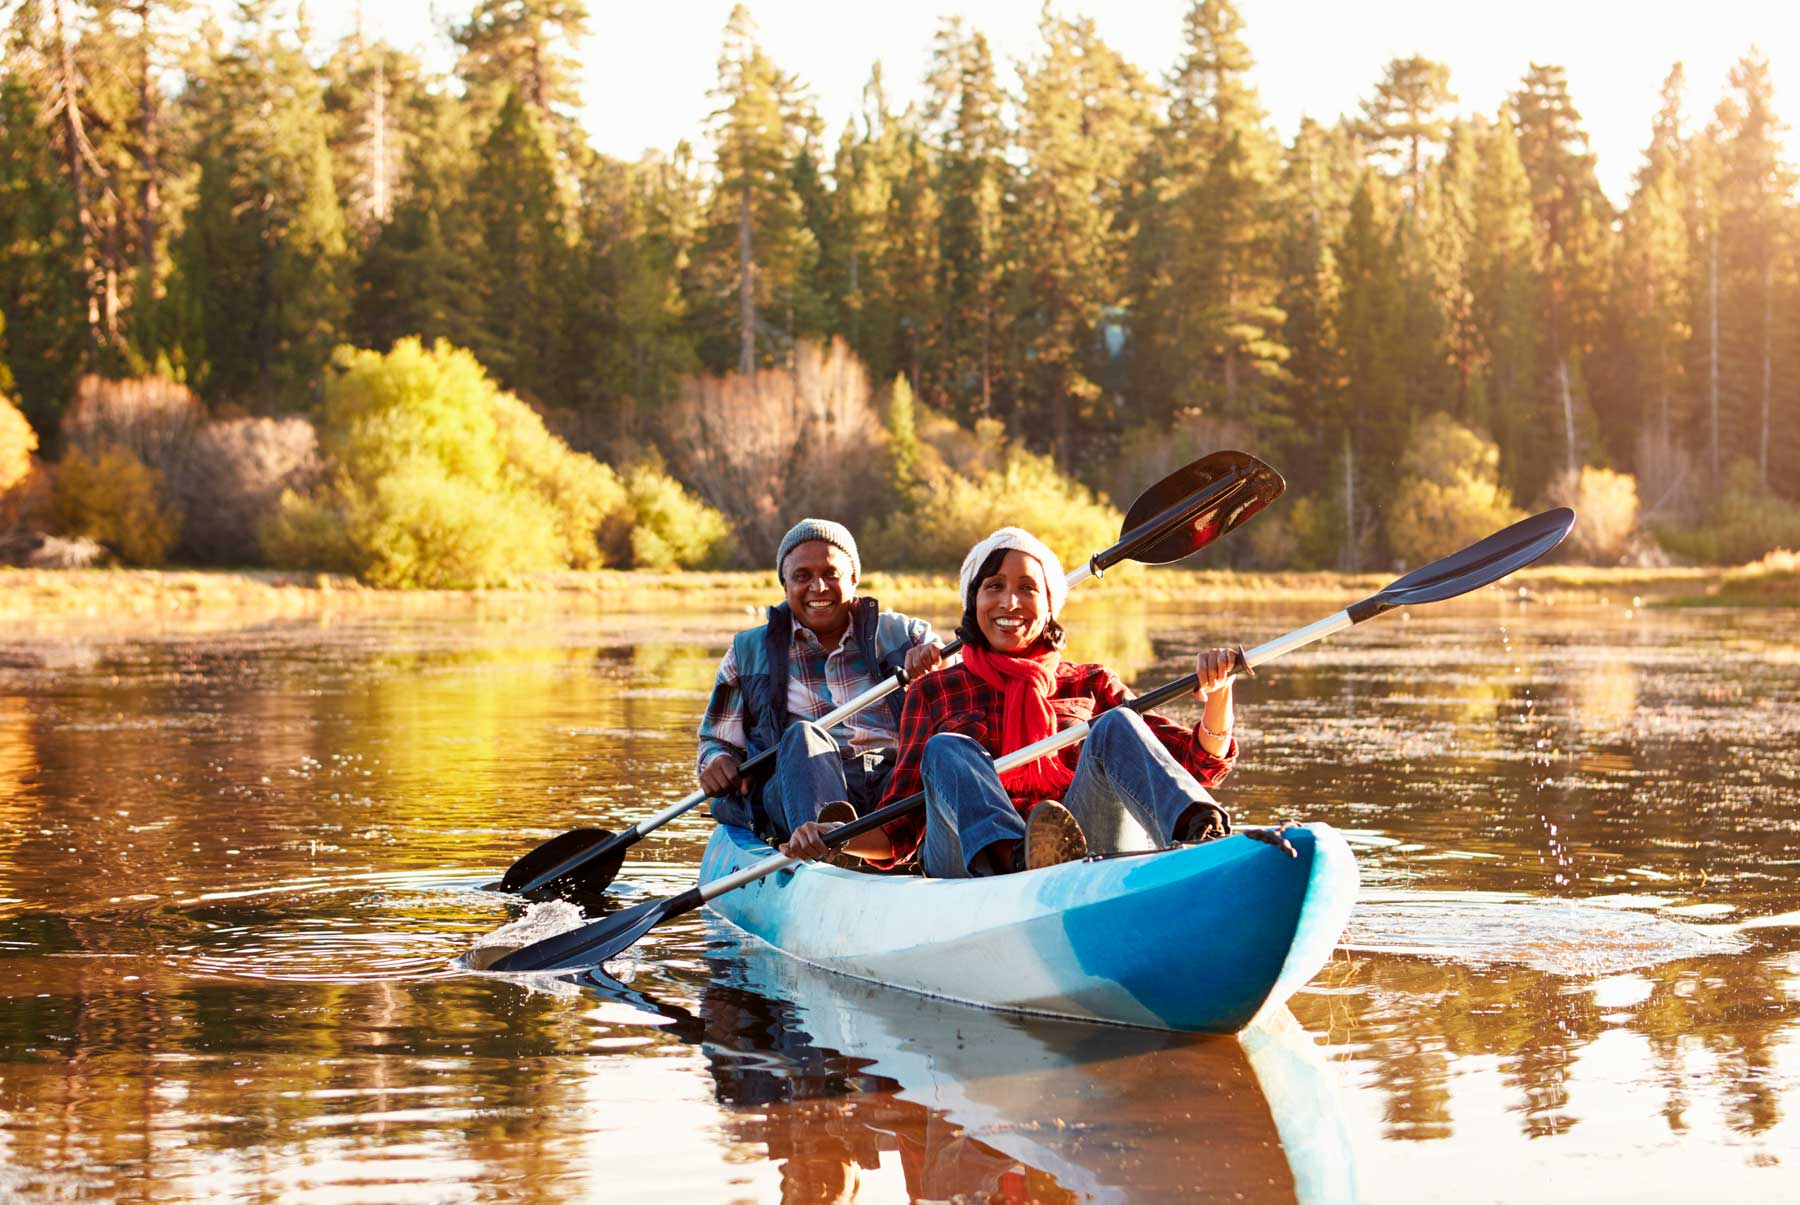 Springwater Hill - Columbia Lake activities - Kayaking